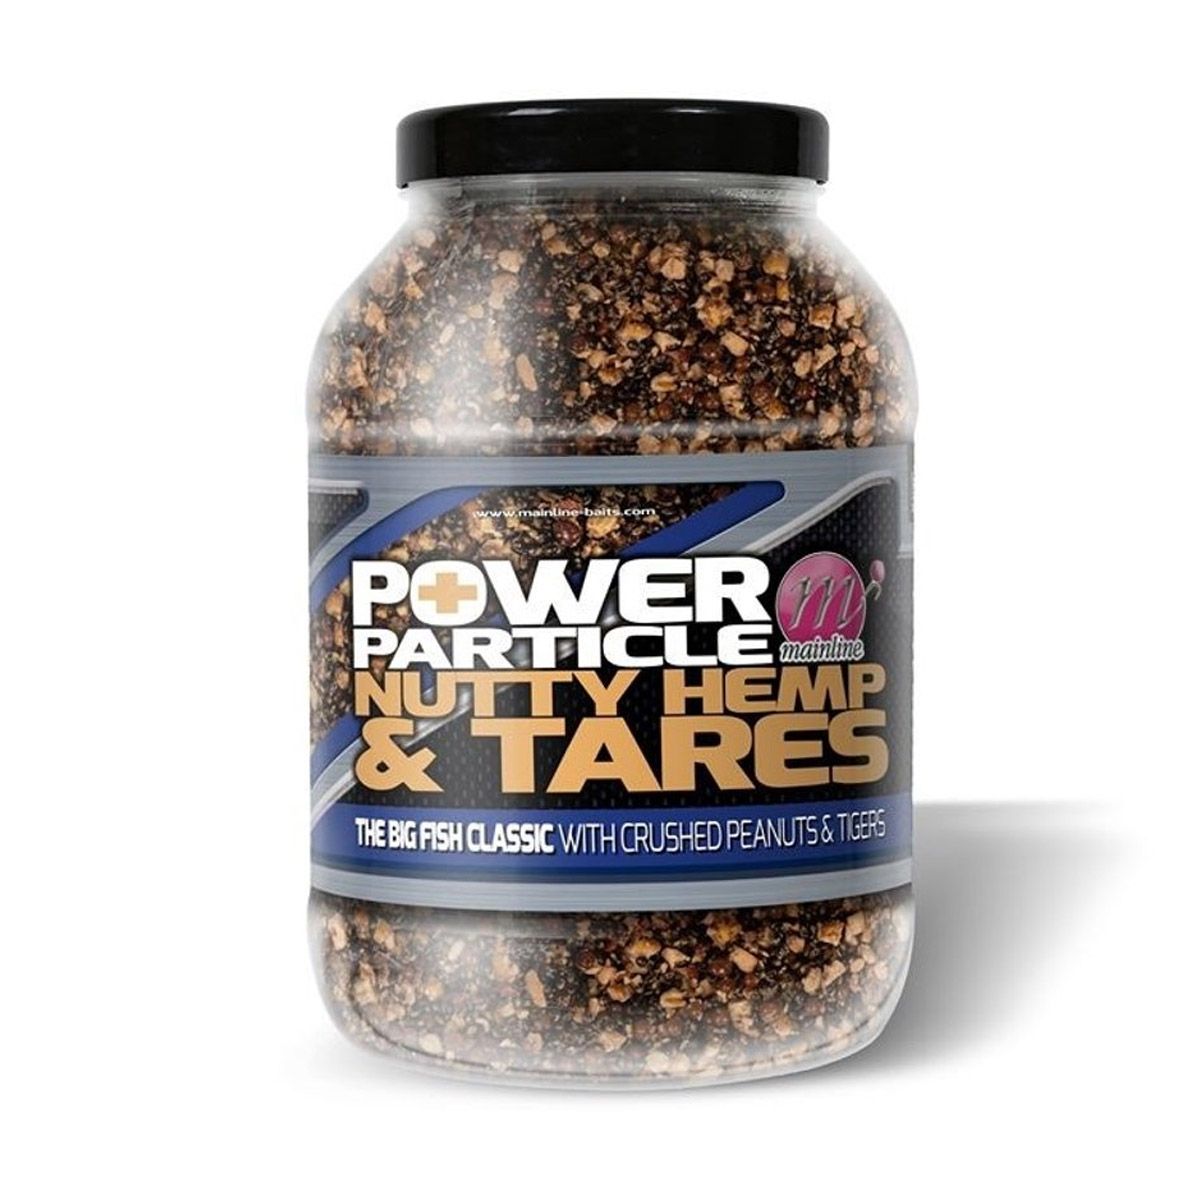 Power Plus Particles Nutty Hemp & Tares   3kg